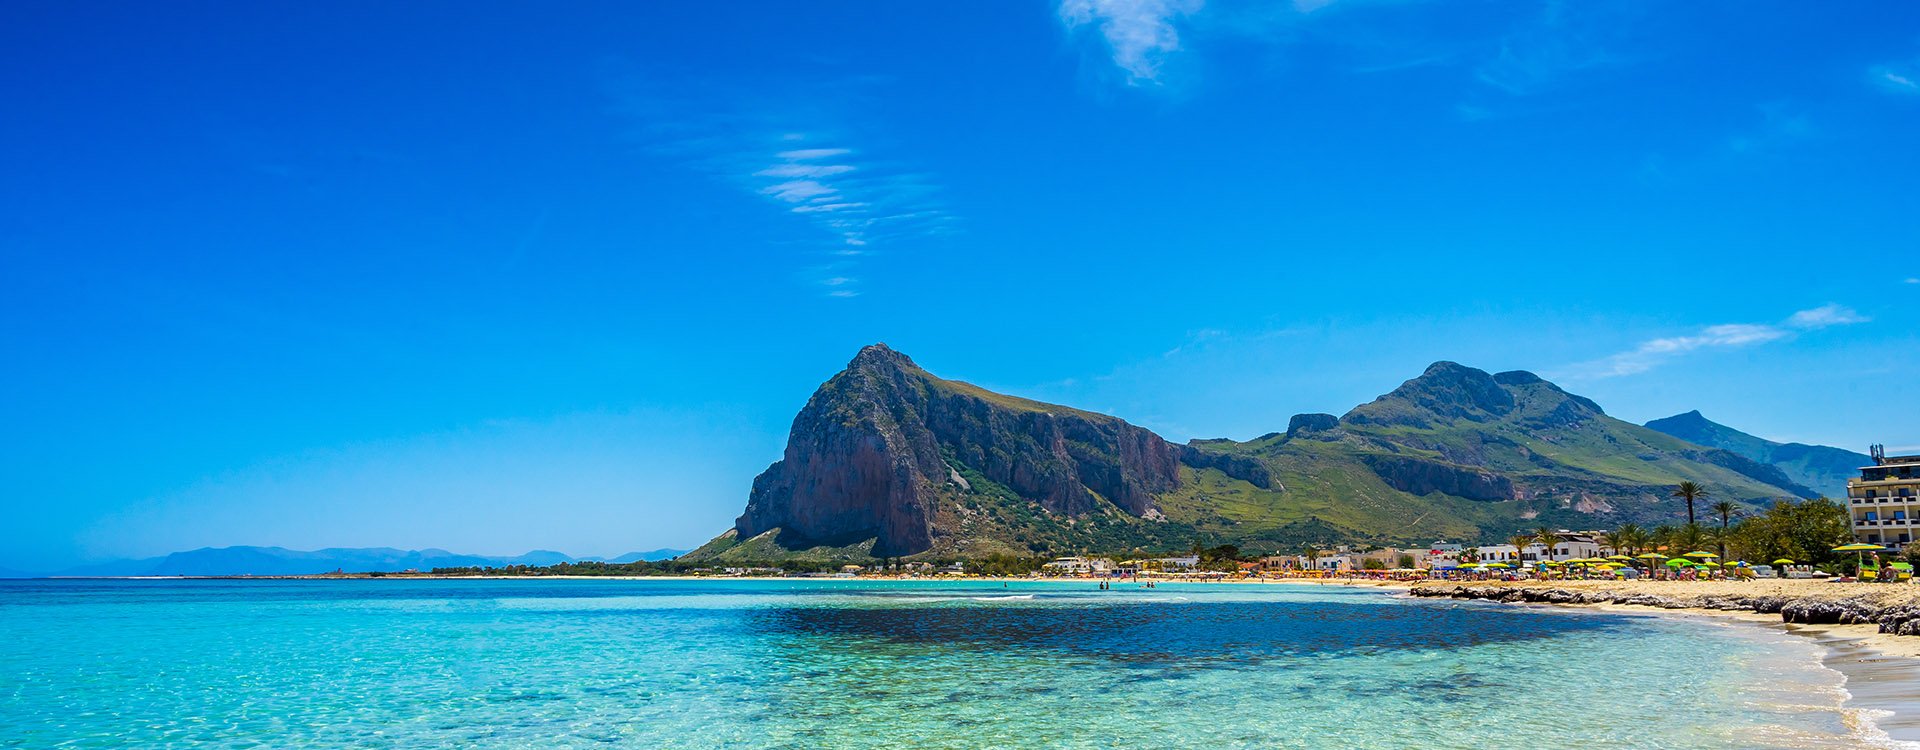 San Vito lo Capo beach and Monte Monaco in background, north-western Sicily